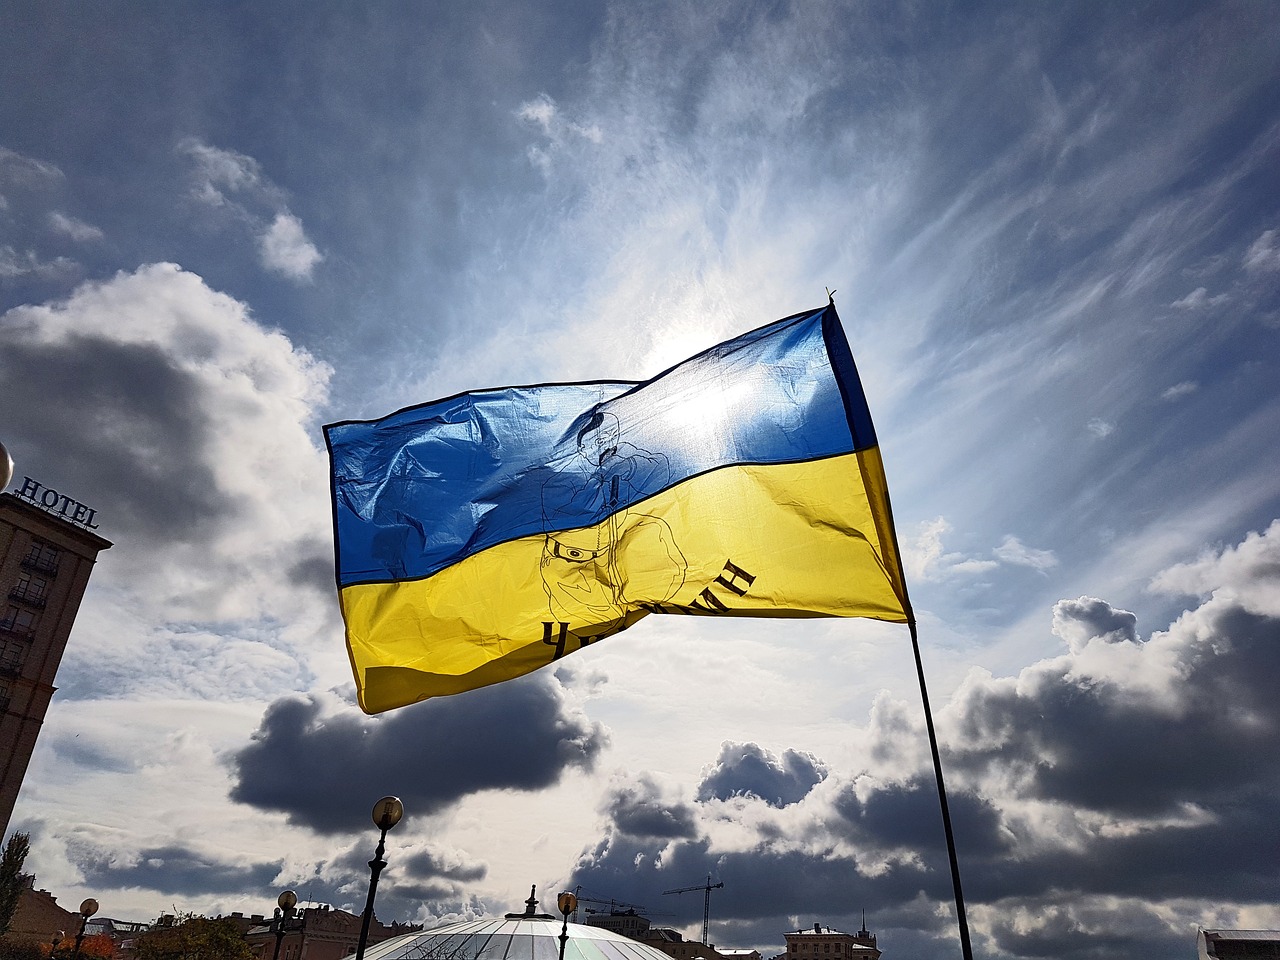 Stichworte zur Ukraine: Nachholende Entkolonialisierung, verspätete Nationenbildung oder plurale Ordnung?